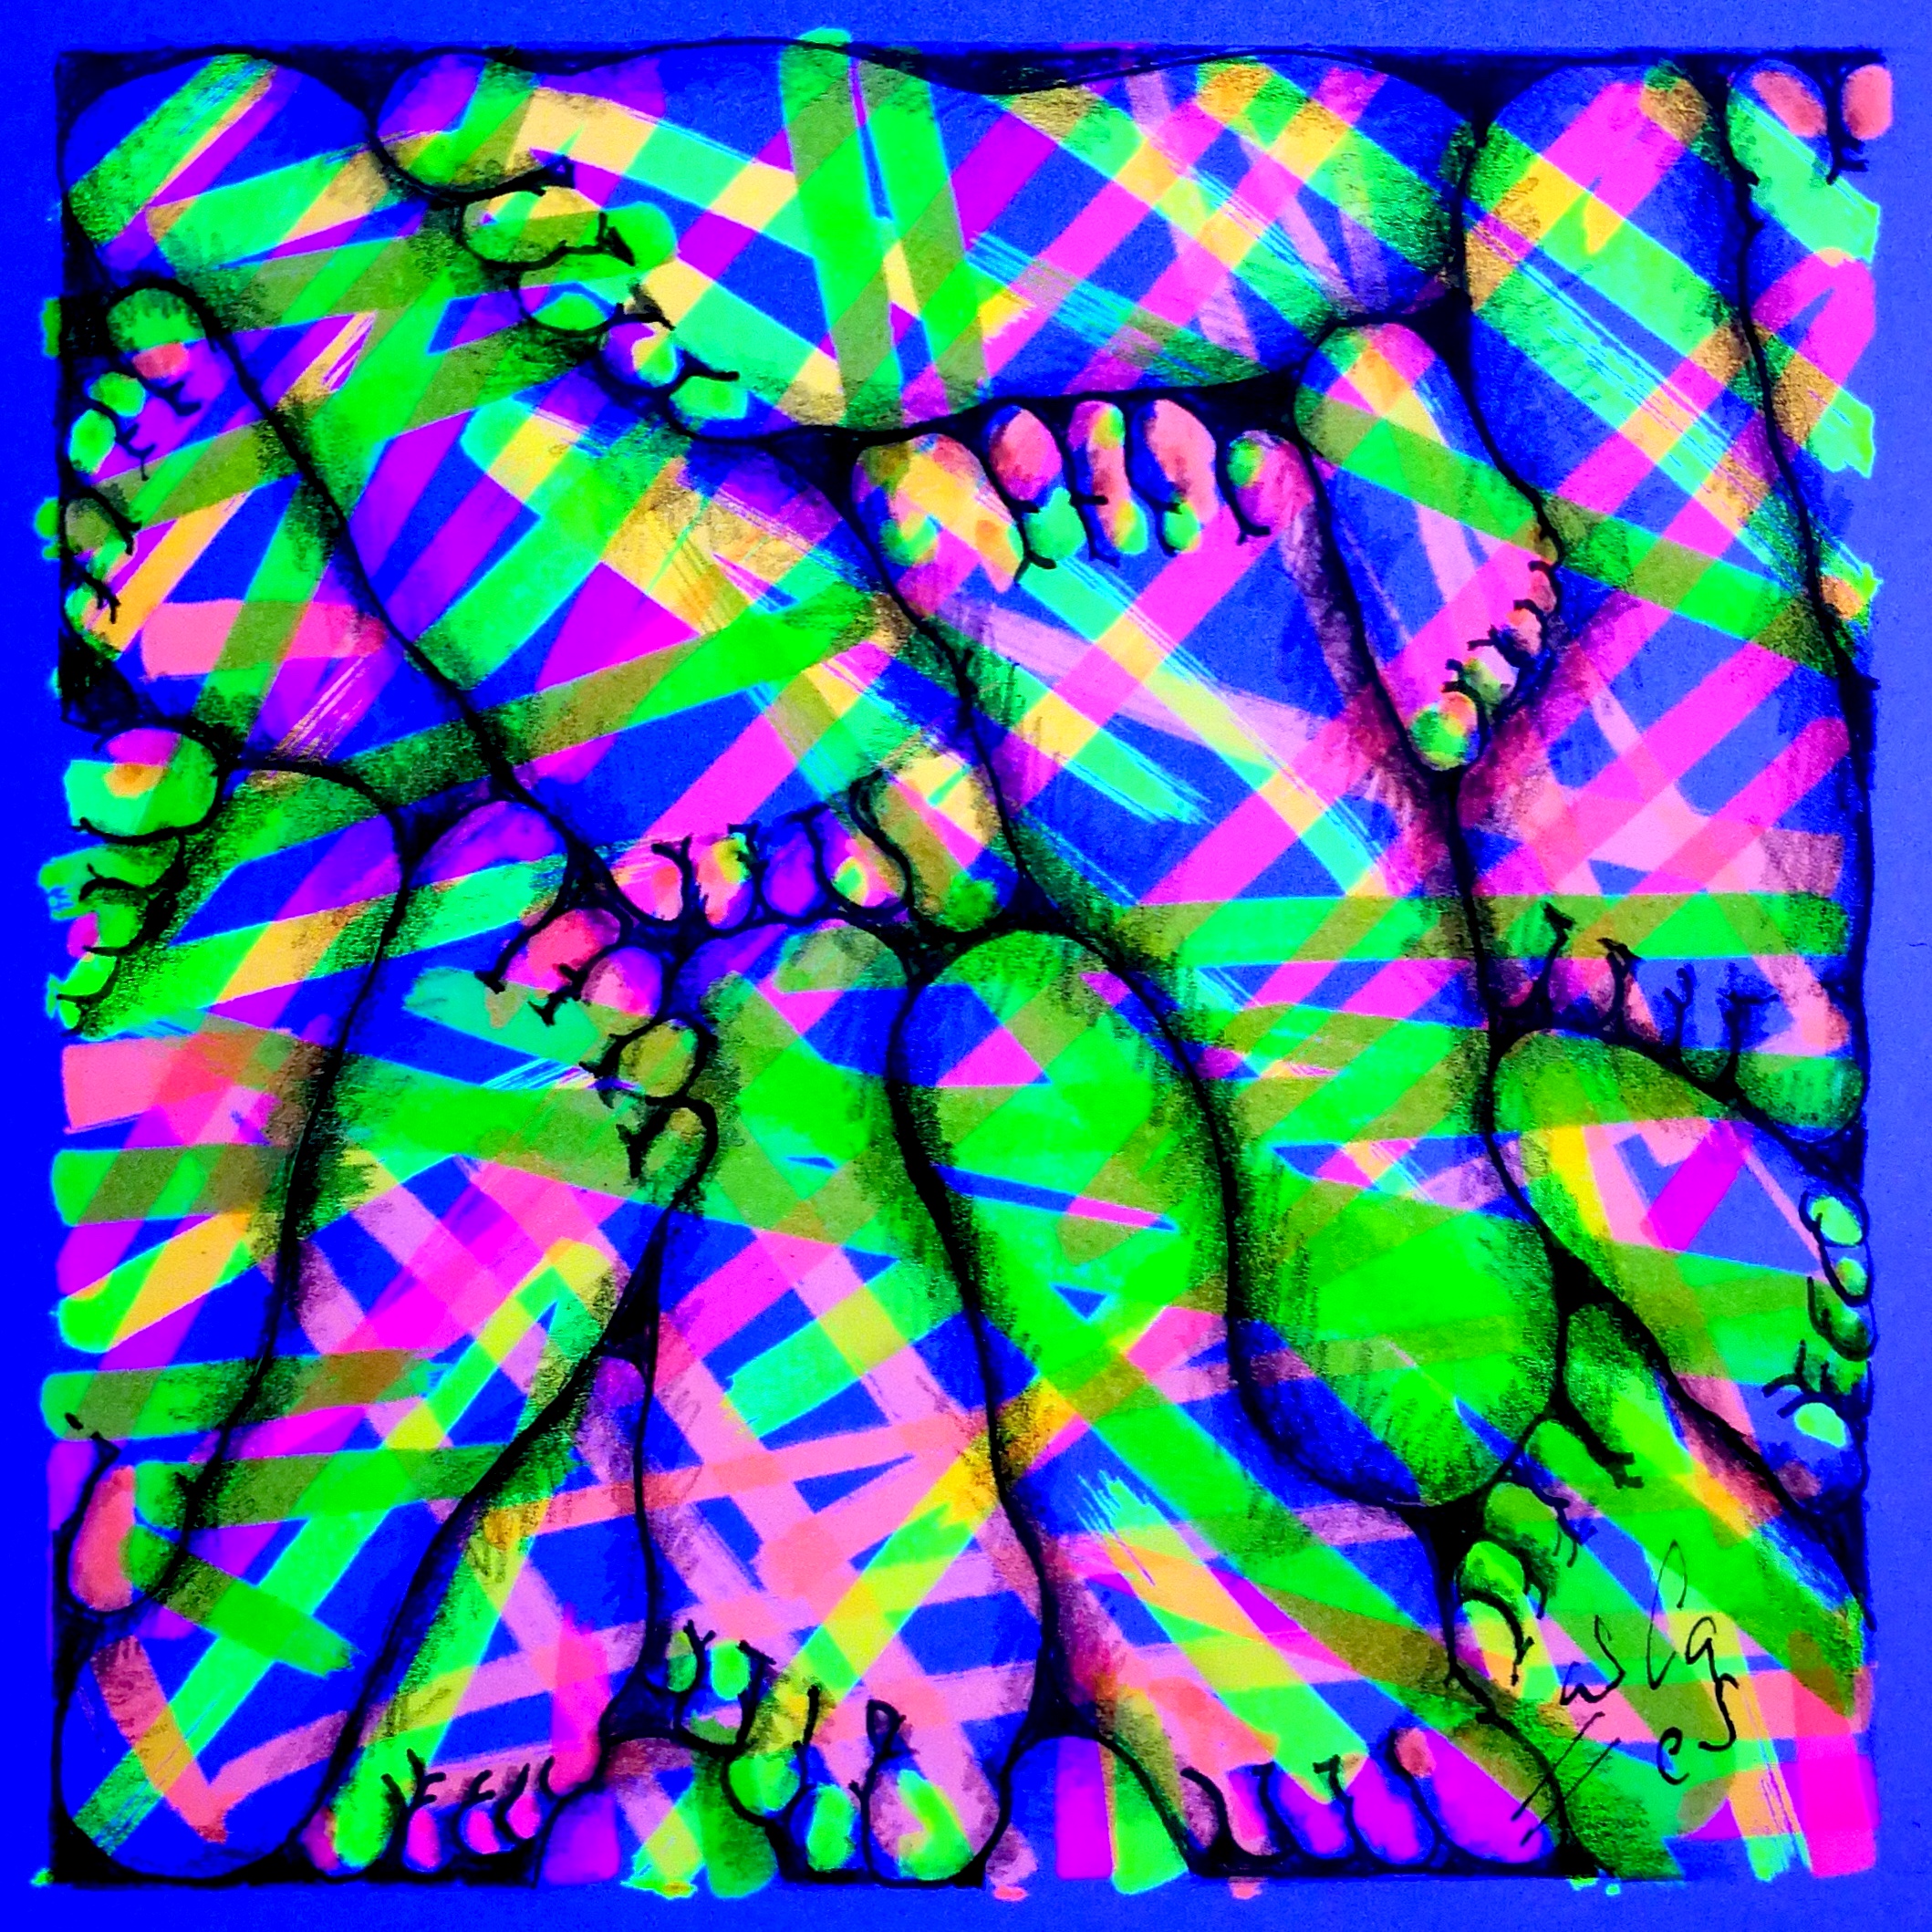 Pies de regalo (fluo), Vicky Casellas, Ilustración fluorescente